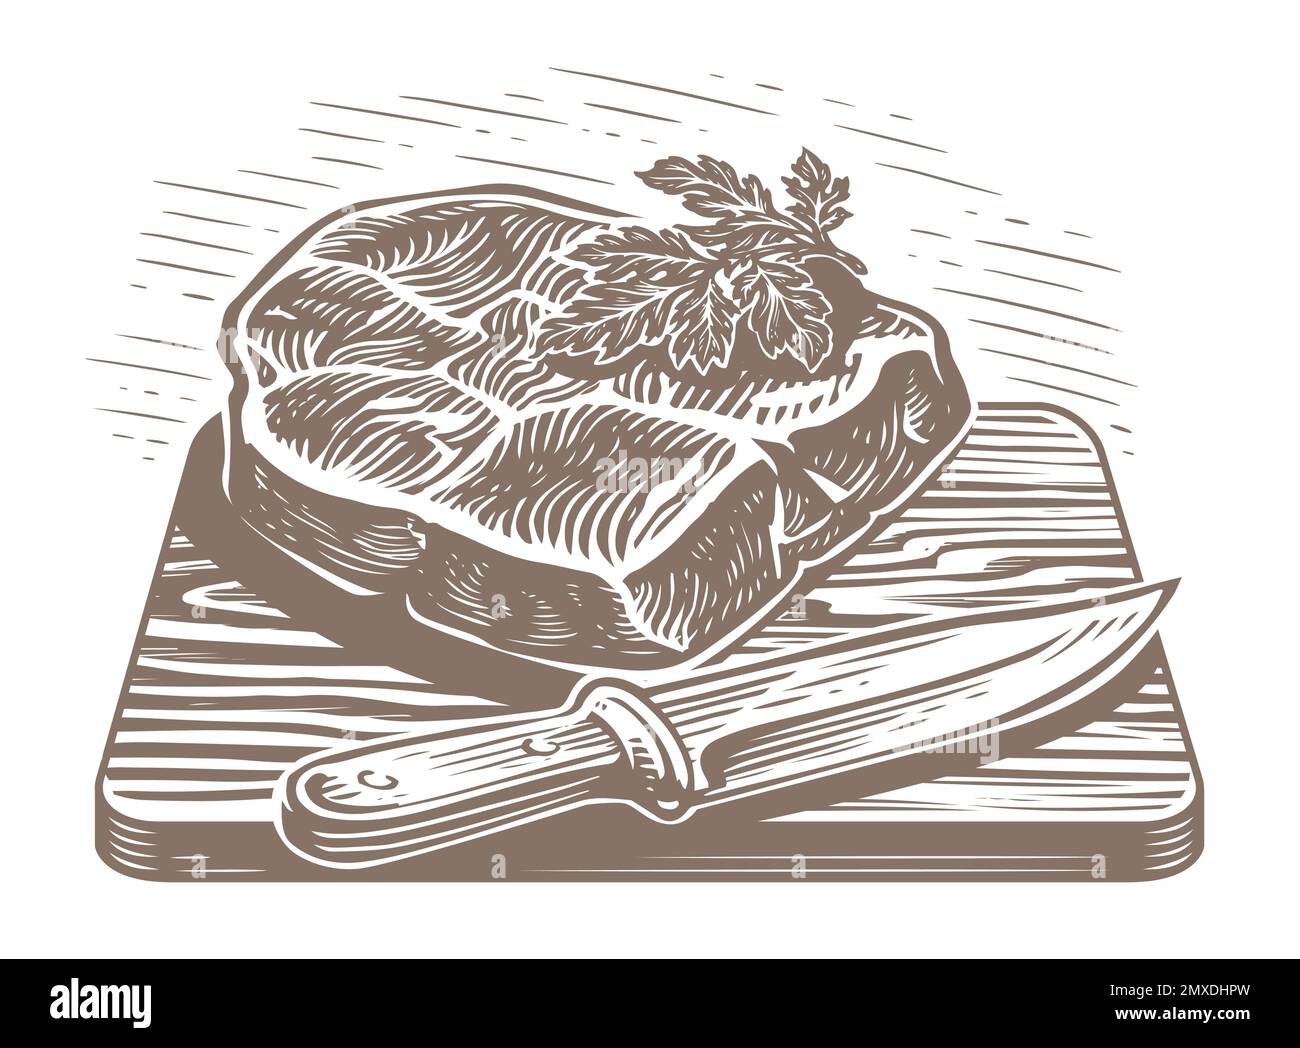 Steak de bœuf grillé en tranches tiré à la main sur une planche de bois avec couteau. Illustration du menu du restaurant ou de la boucherie Illustration de Vecteur